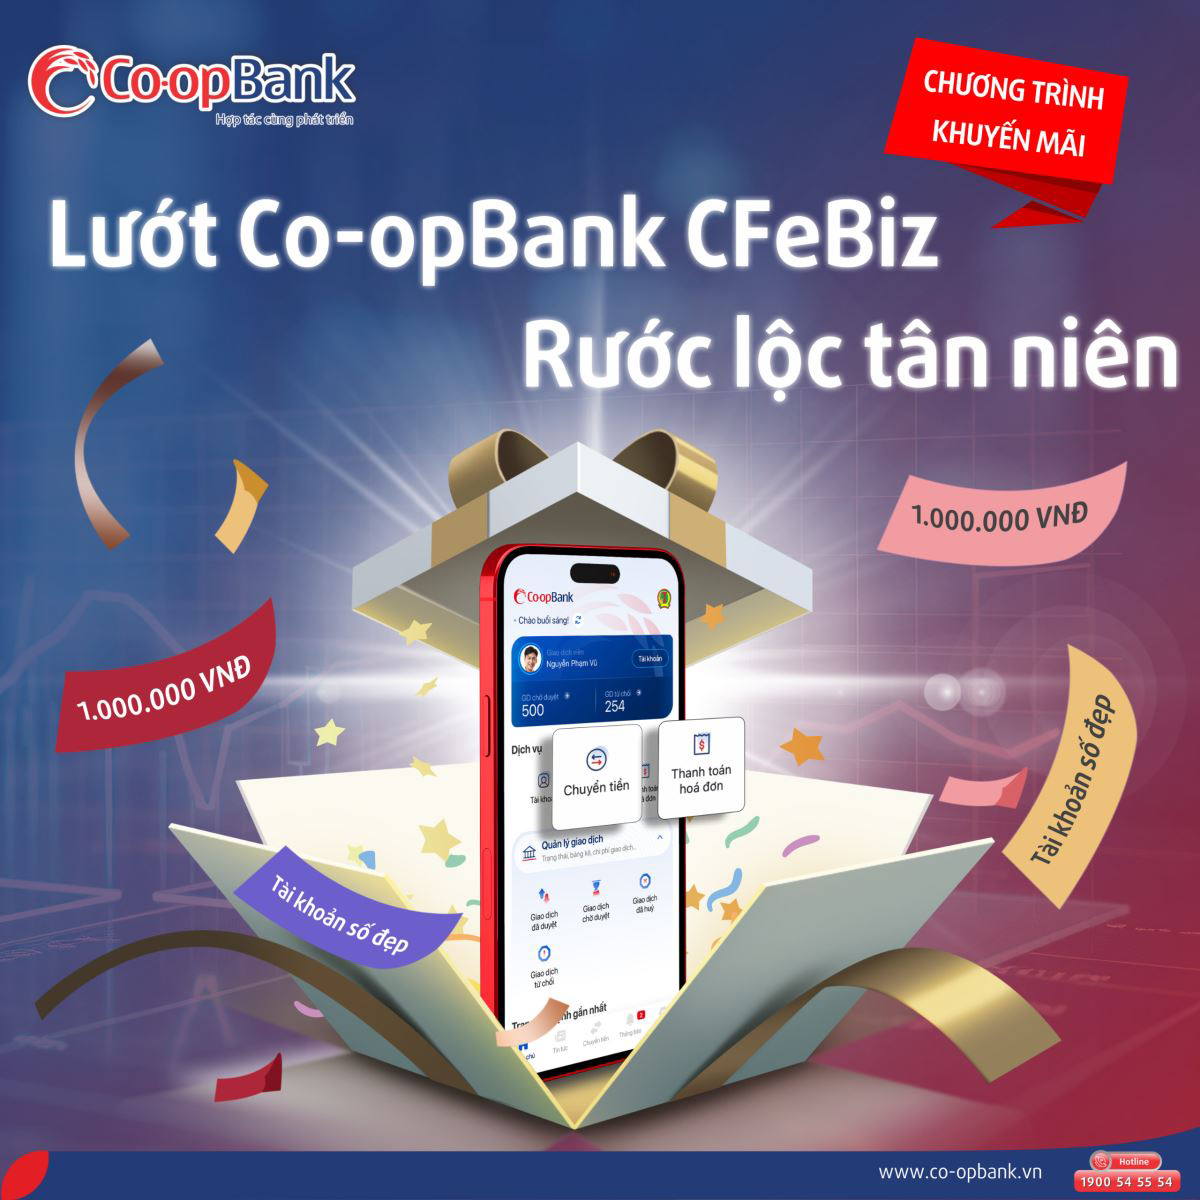 Co-opBank CFeBiz